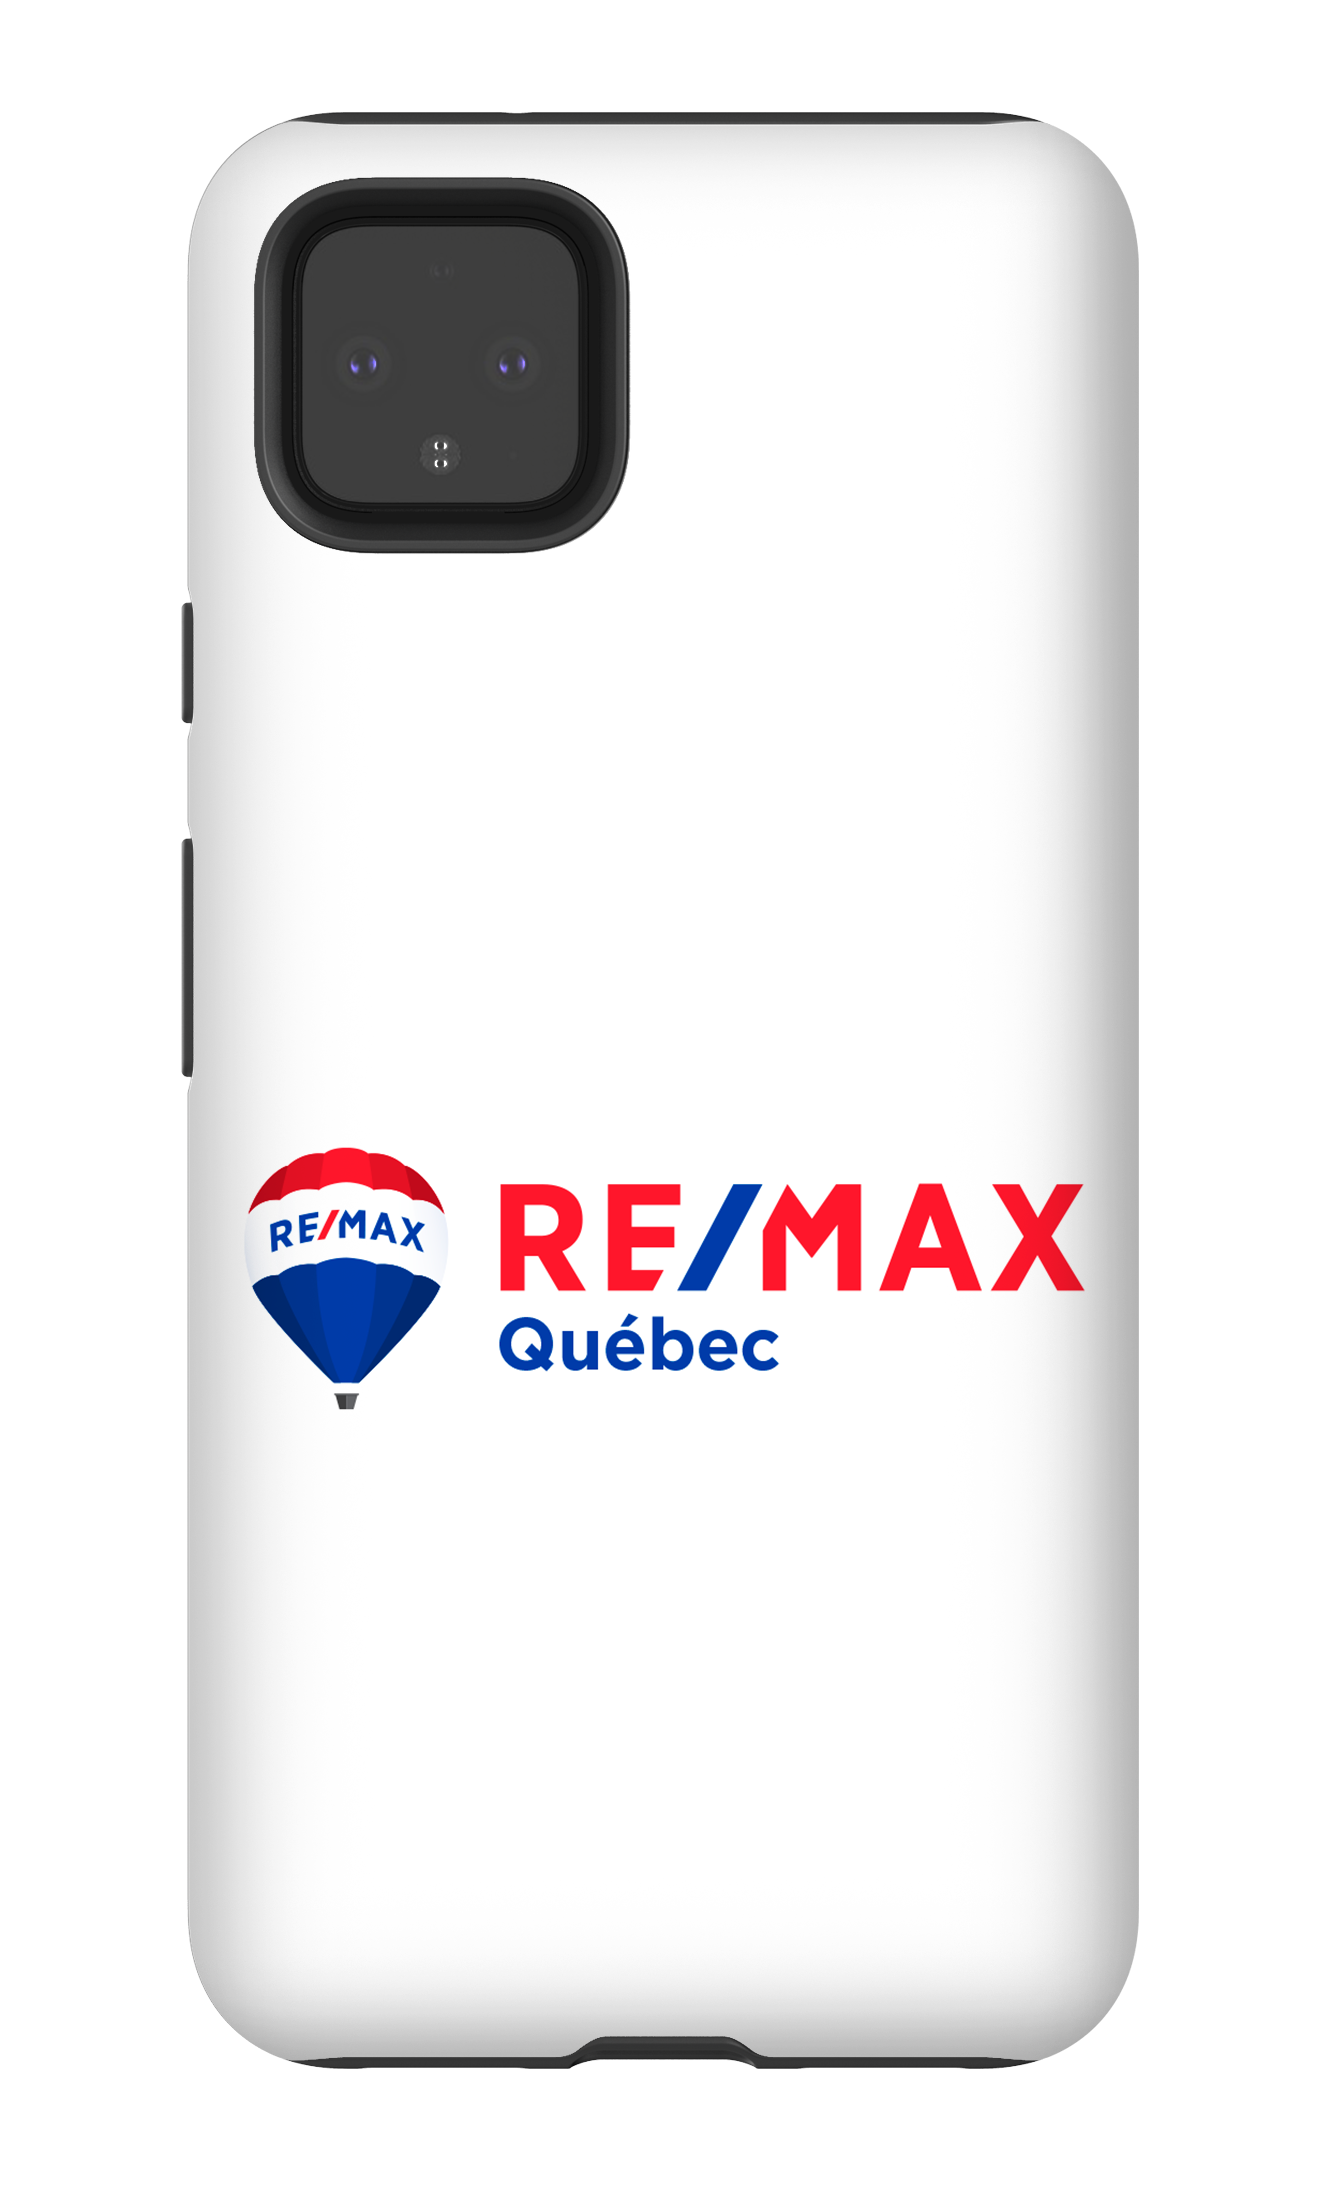 Remax Québec Blanc - Google Pixel 4 XL